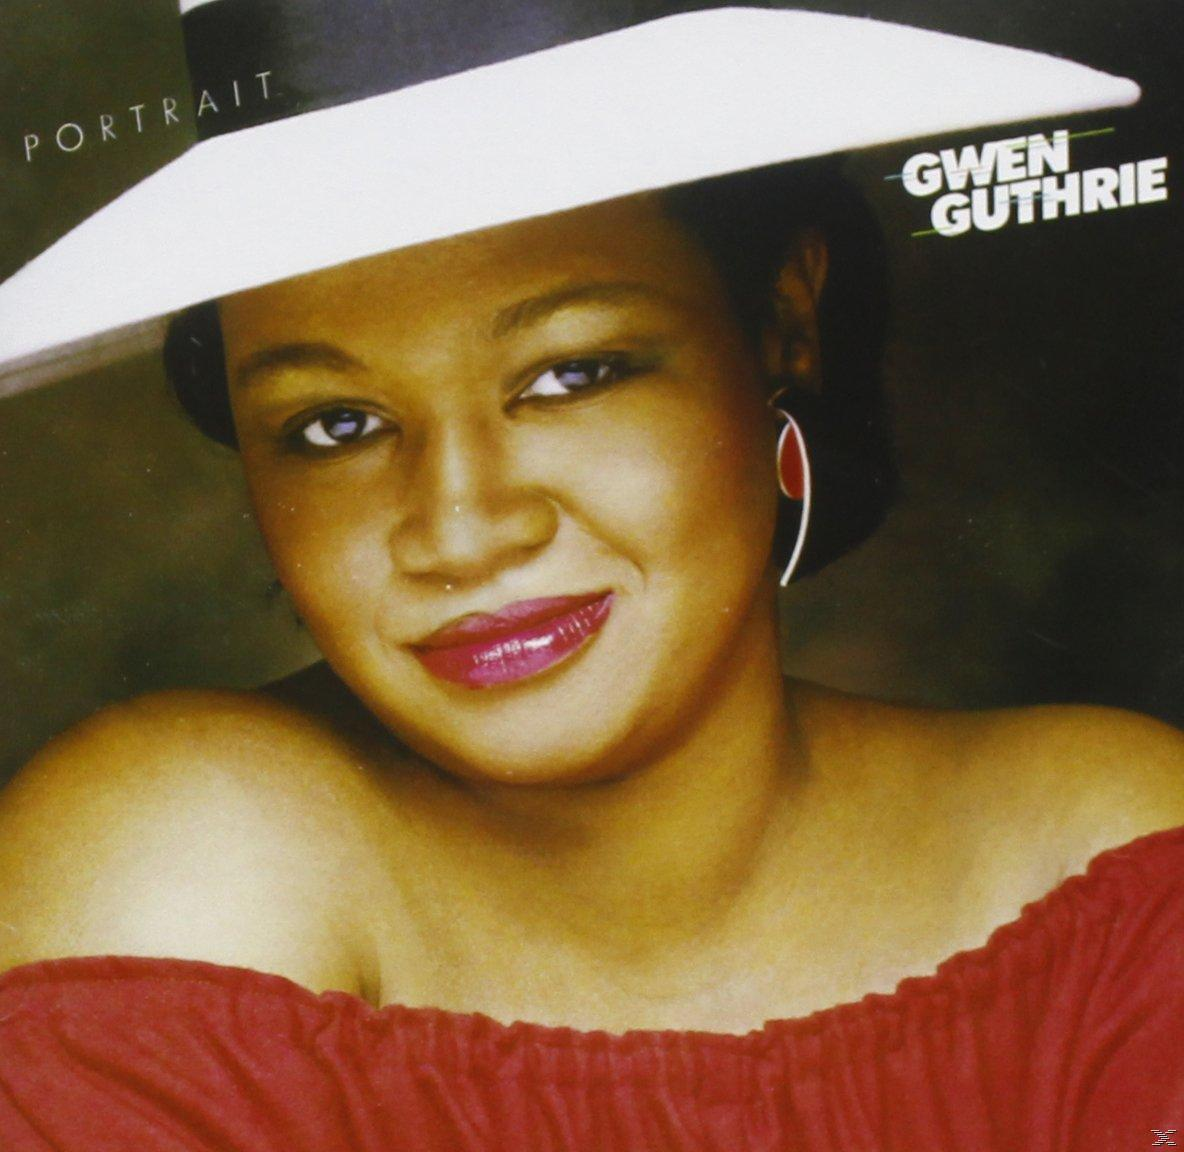 Portrait (CD) Gwen - - Guthrie